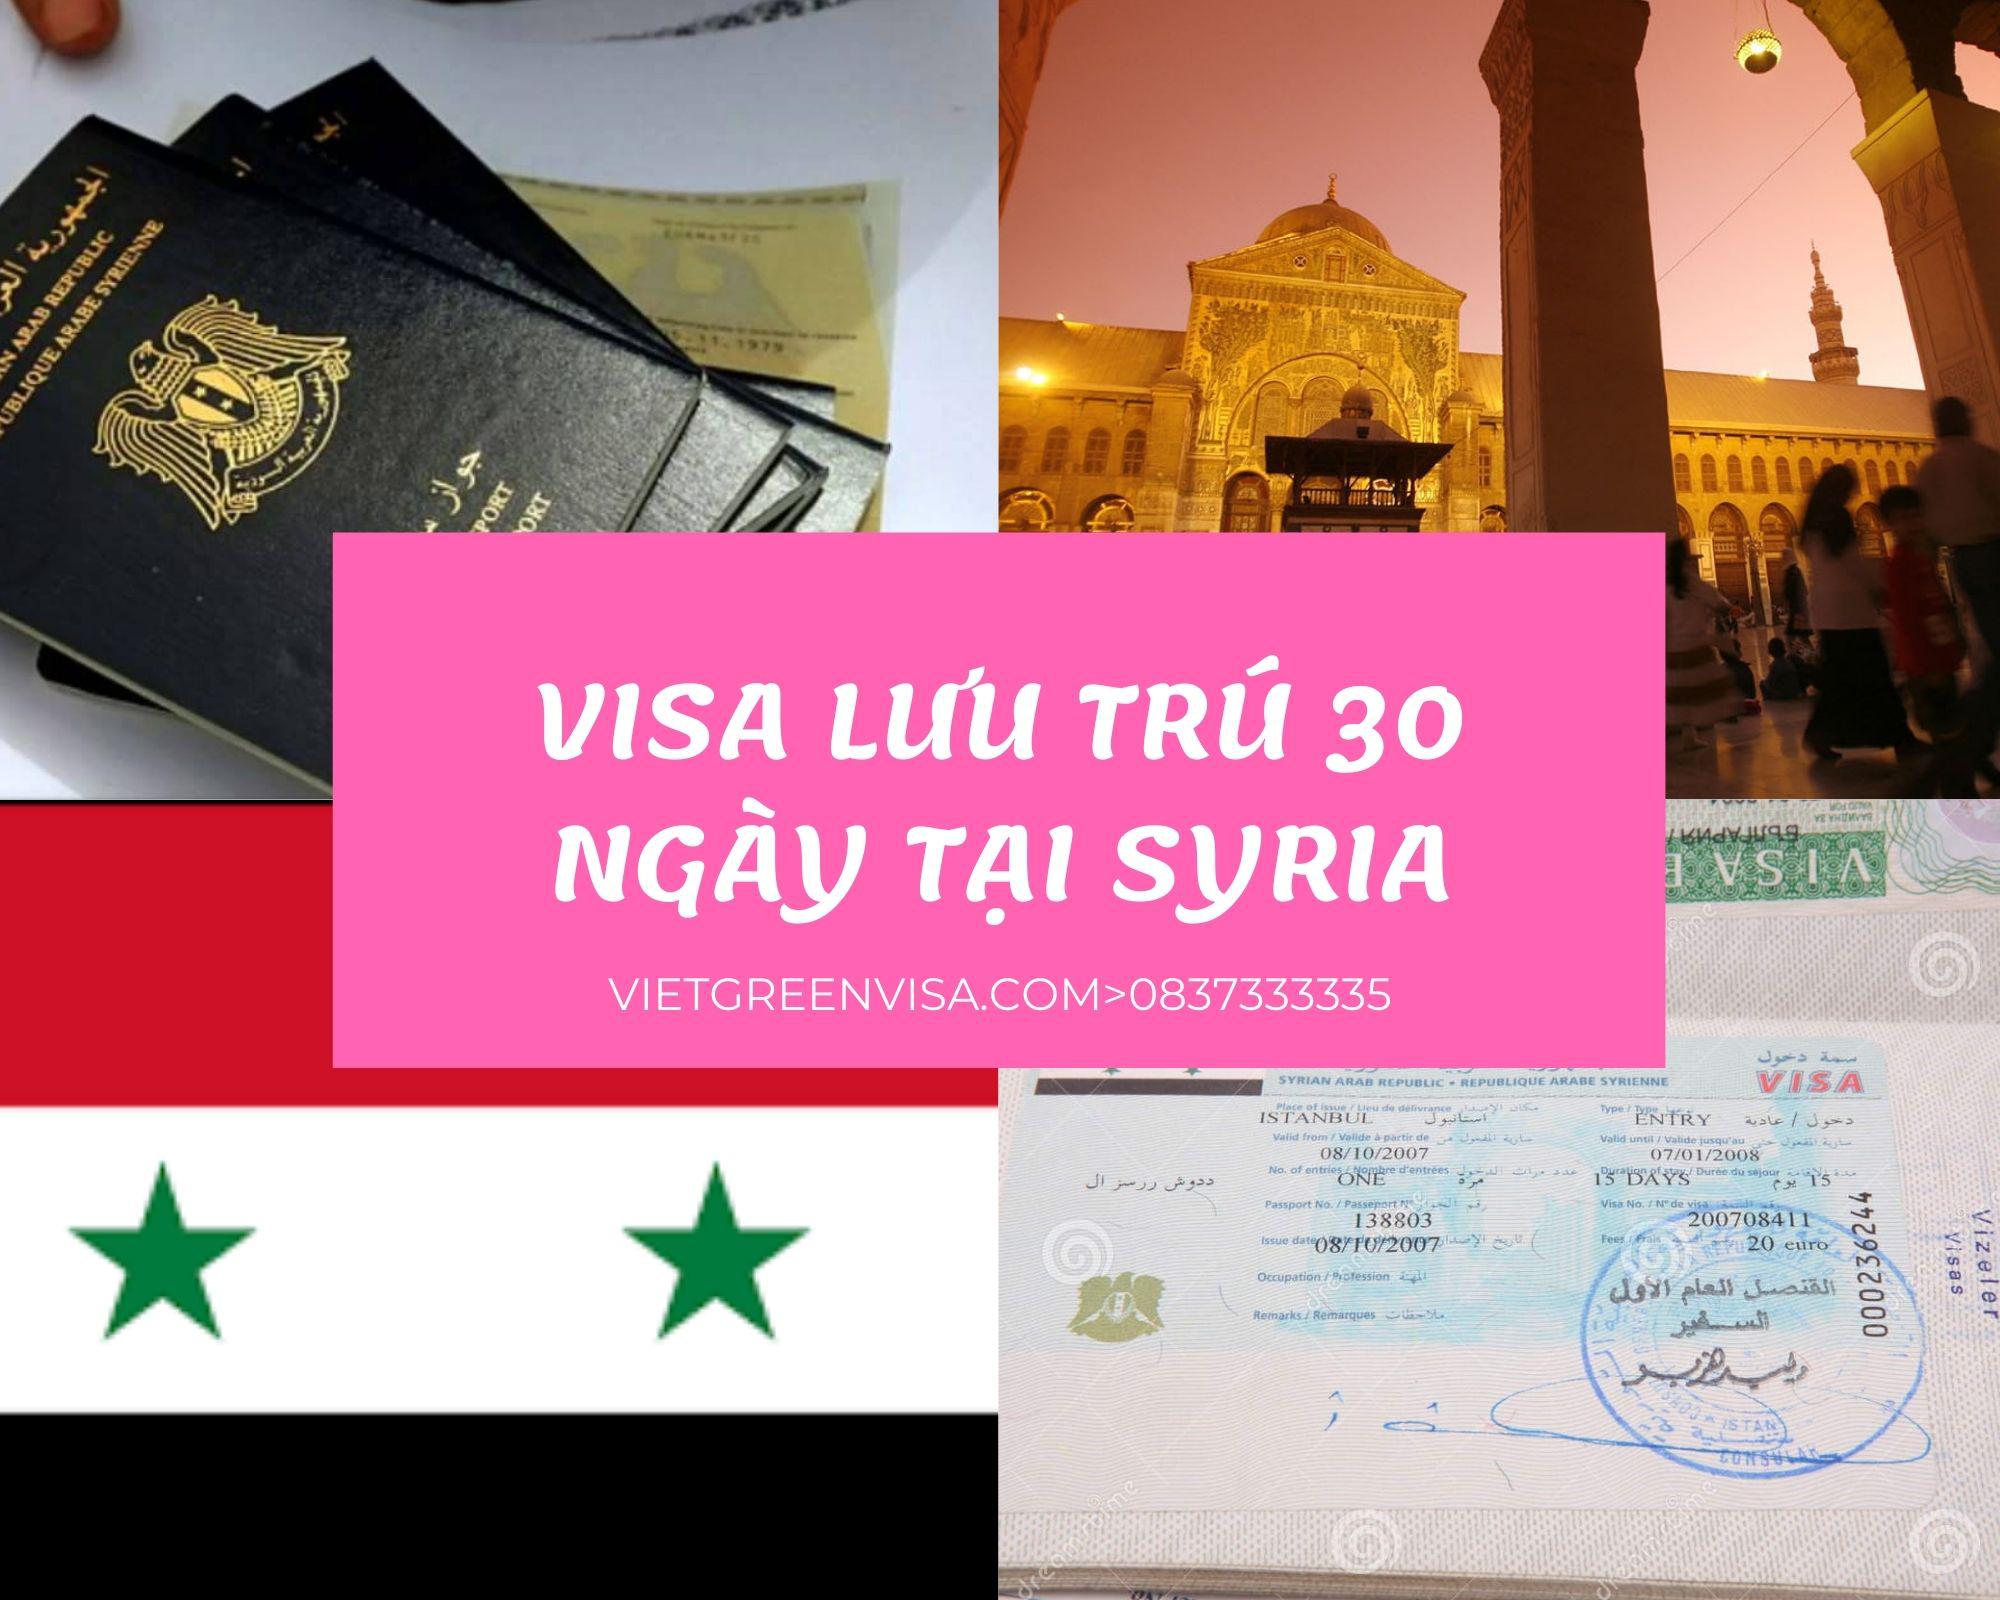 Dịch  vụ visa Syria lưu trú 30 ngày tại Hà Nội, Hồ Chí Minh